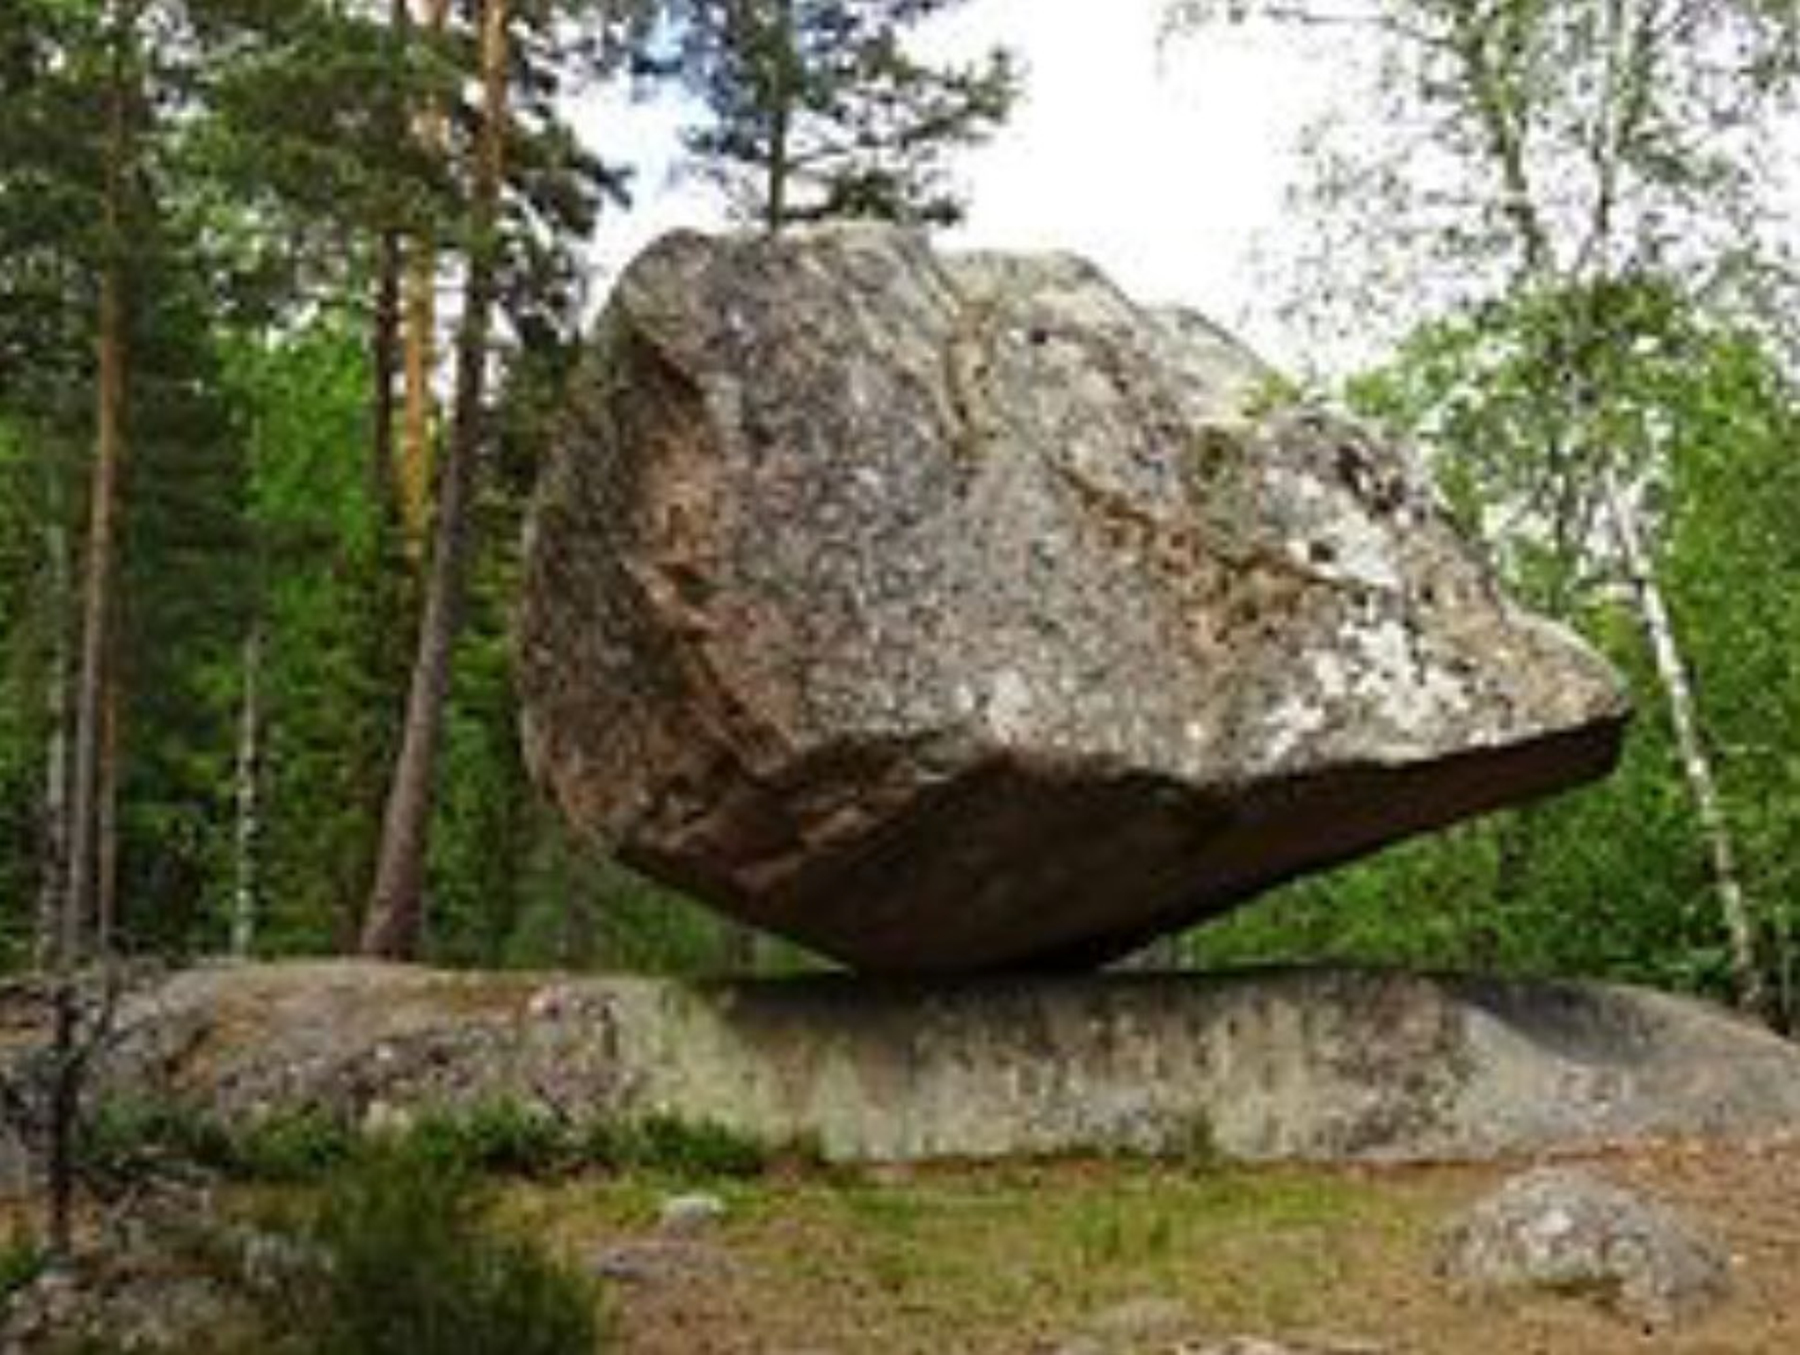 Bild av en stor sten i en trädgård